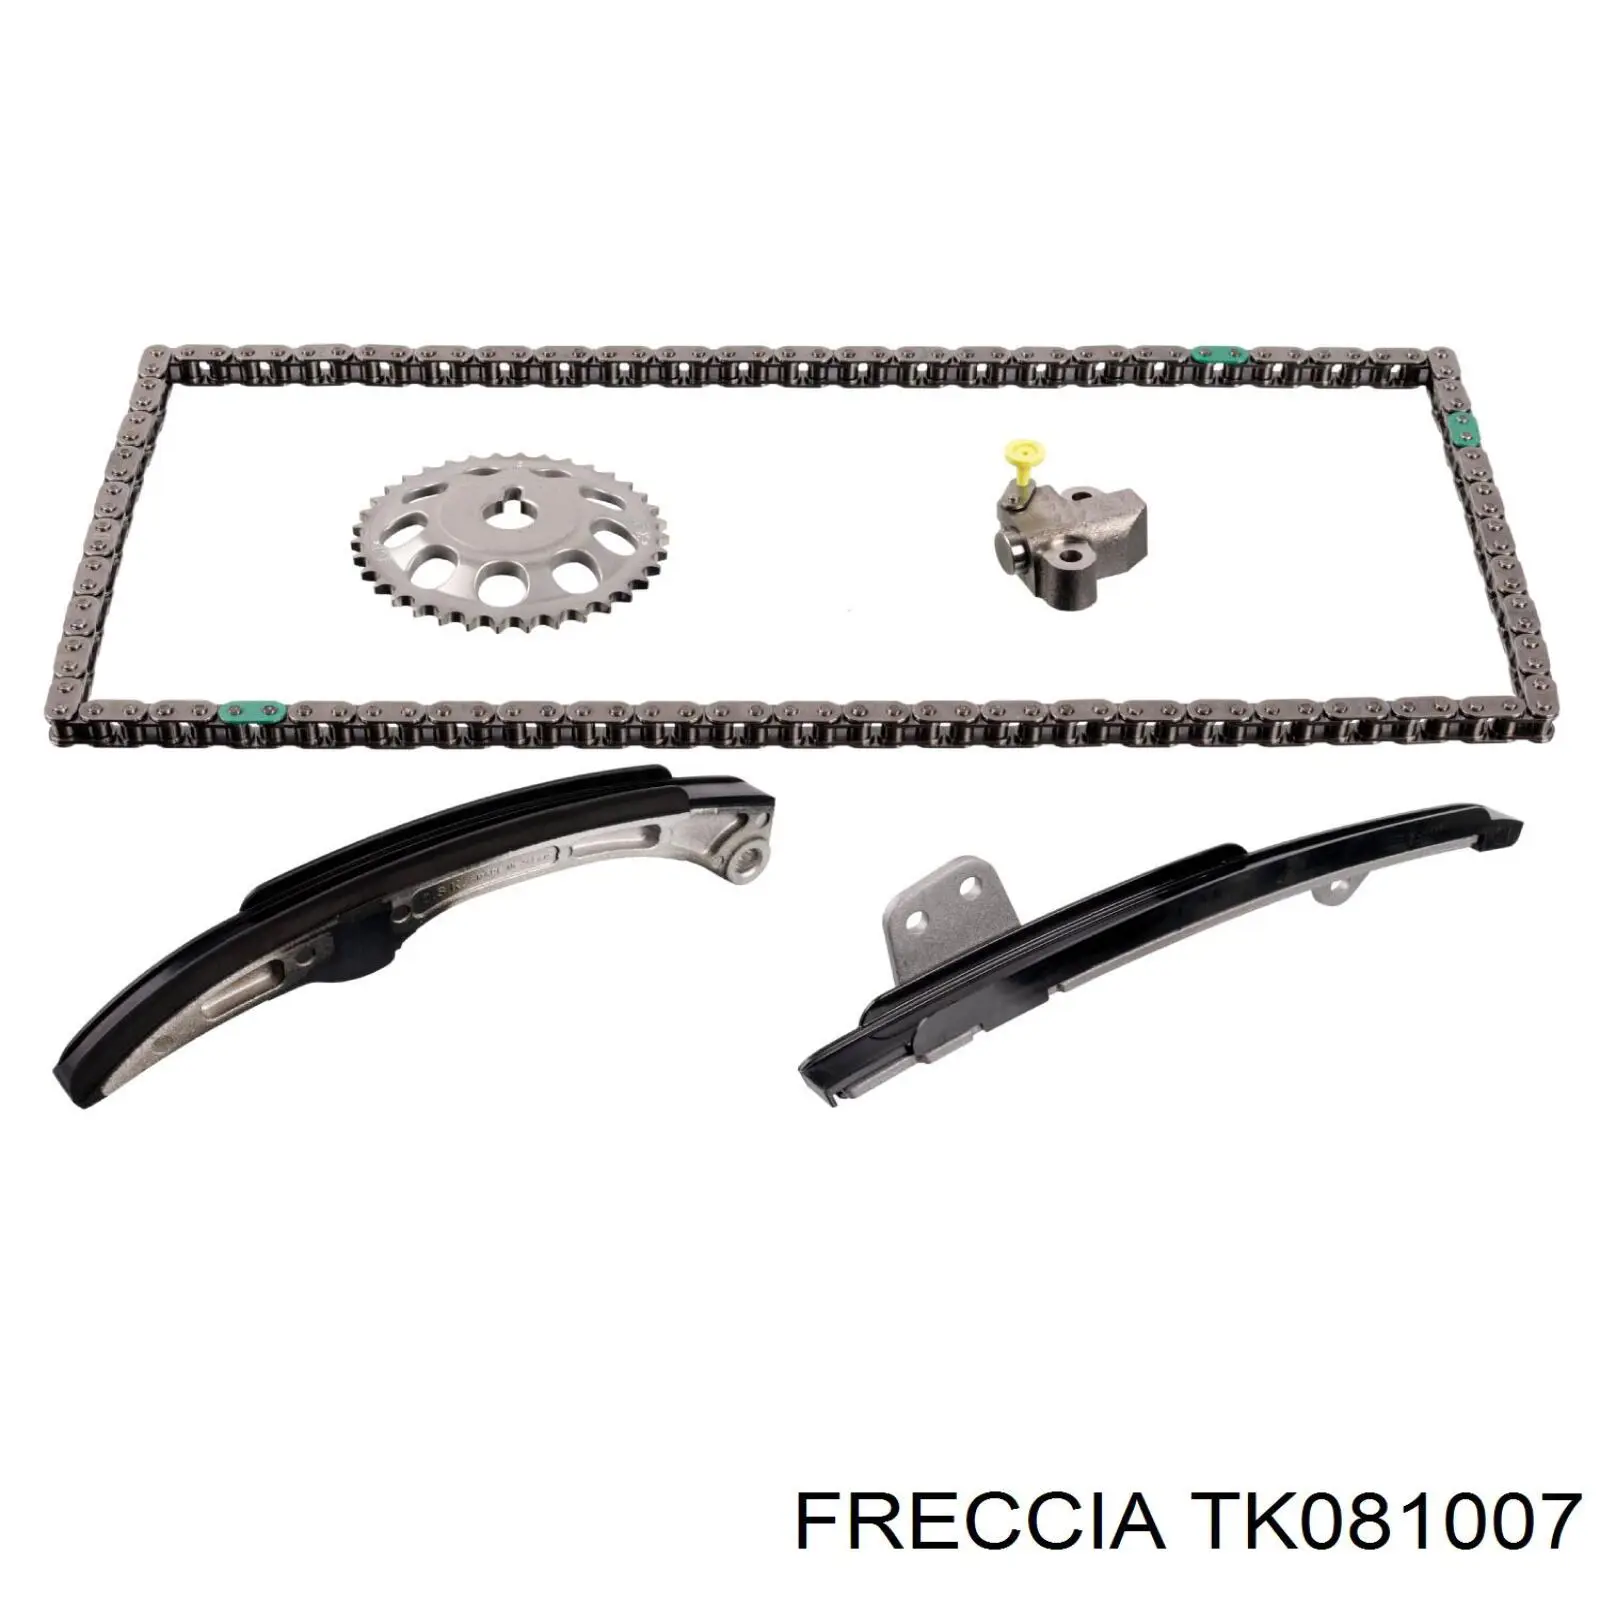 TK081007 Freccia ланцюг грм, комплект